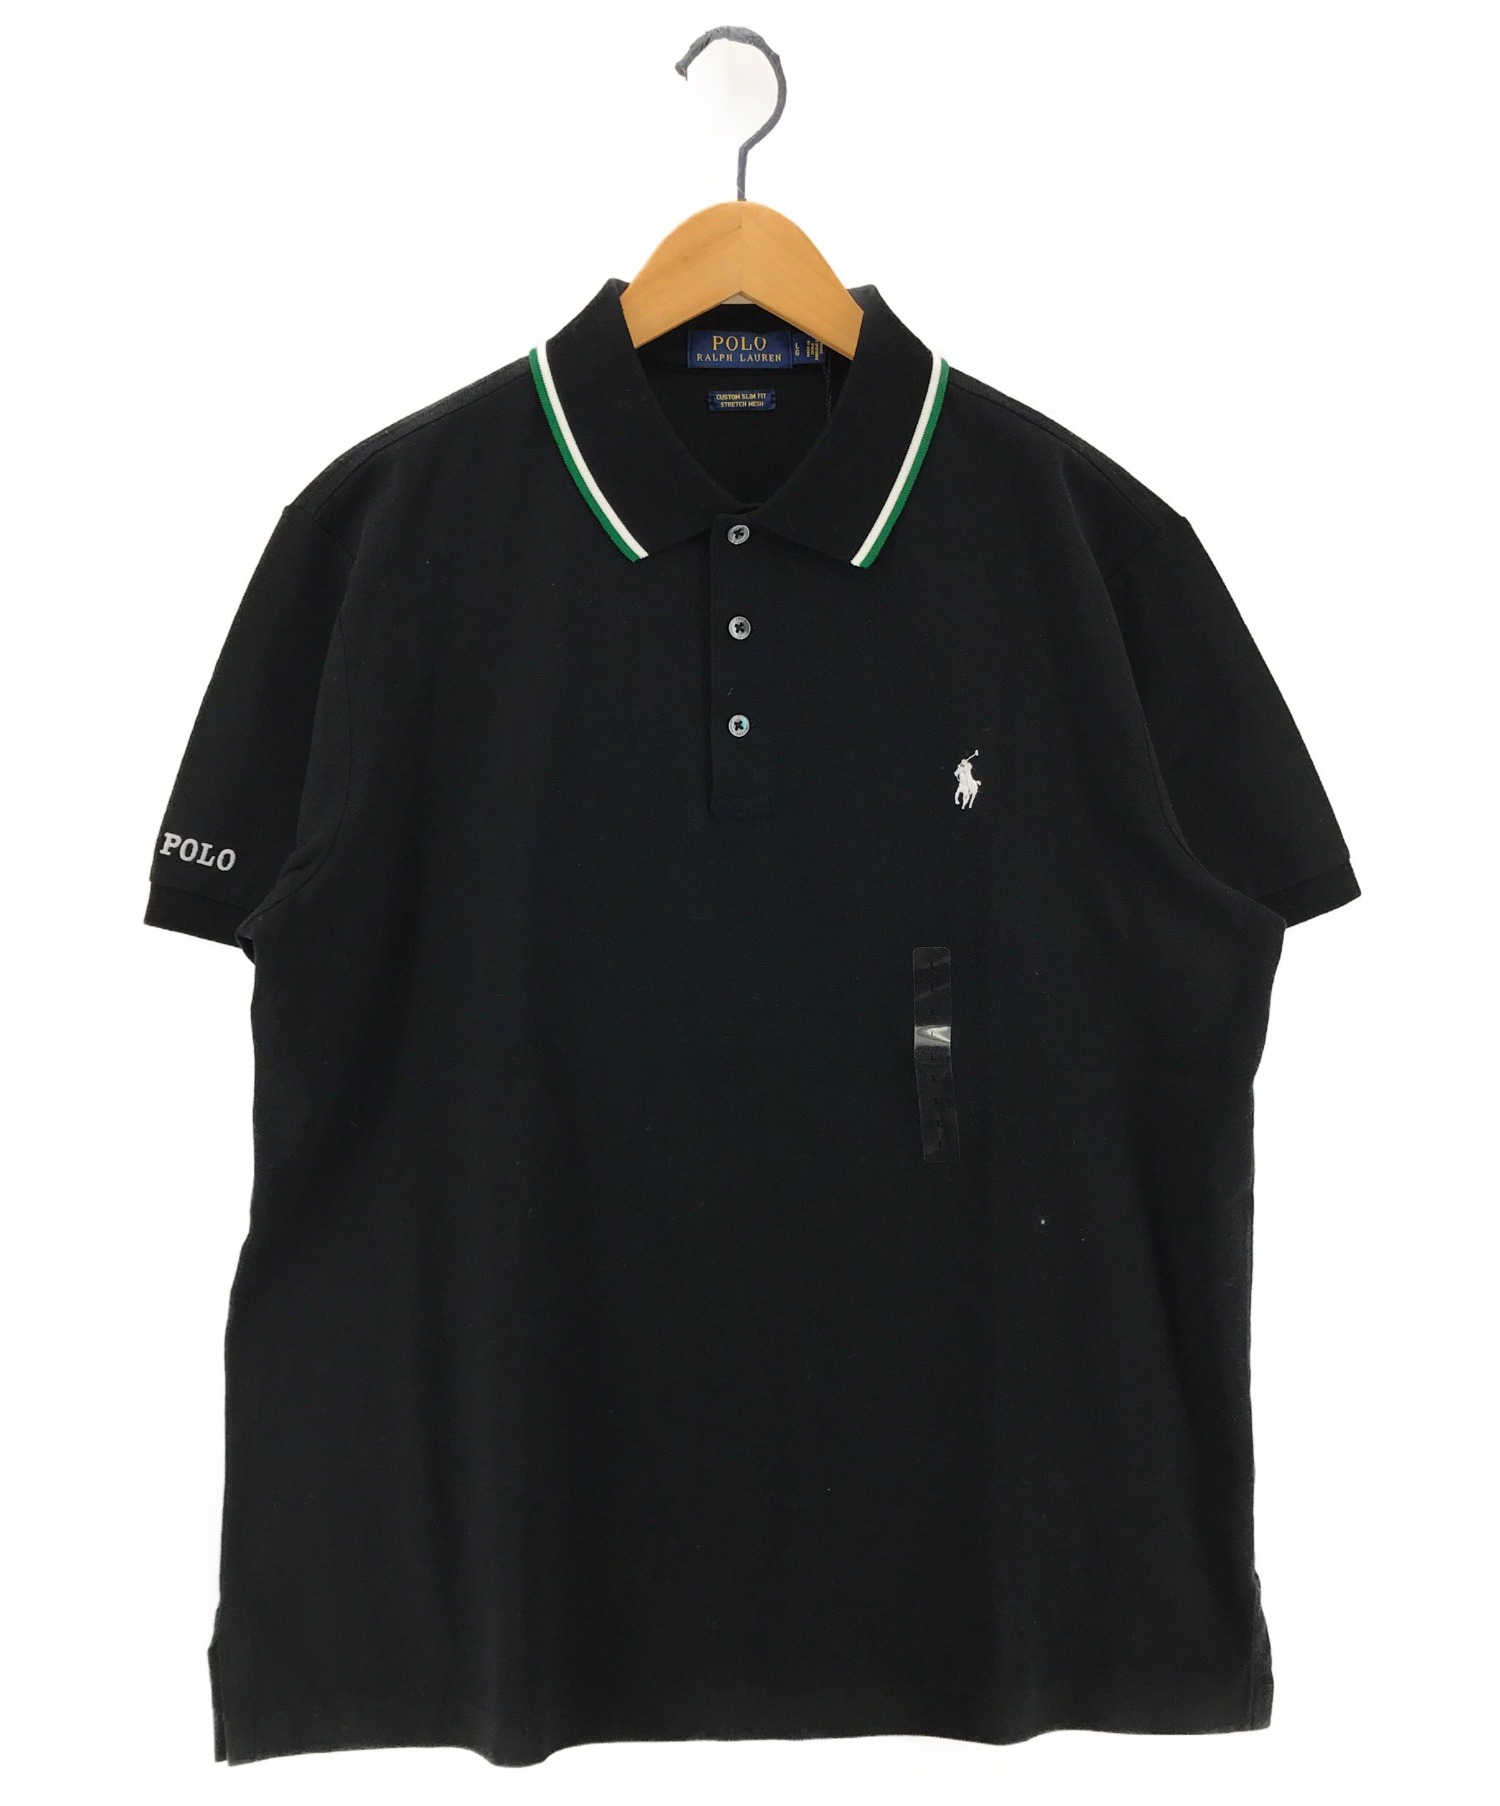 POLO RALPH LAUREN (ポロ・ラルフローレン) ポロシャツ ブラック サイズ:L 未使用品